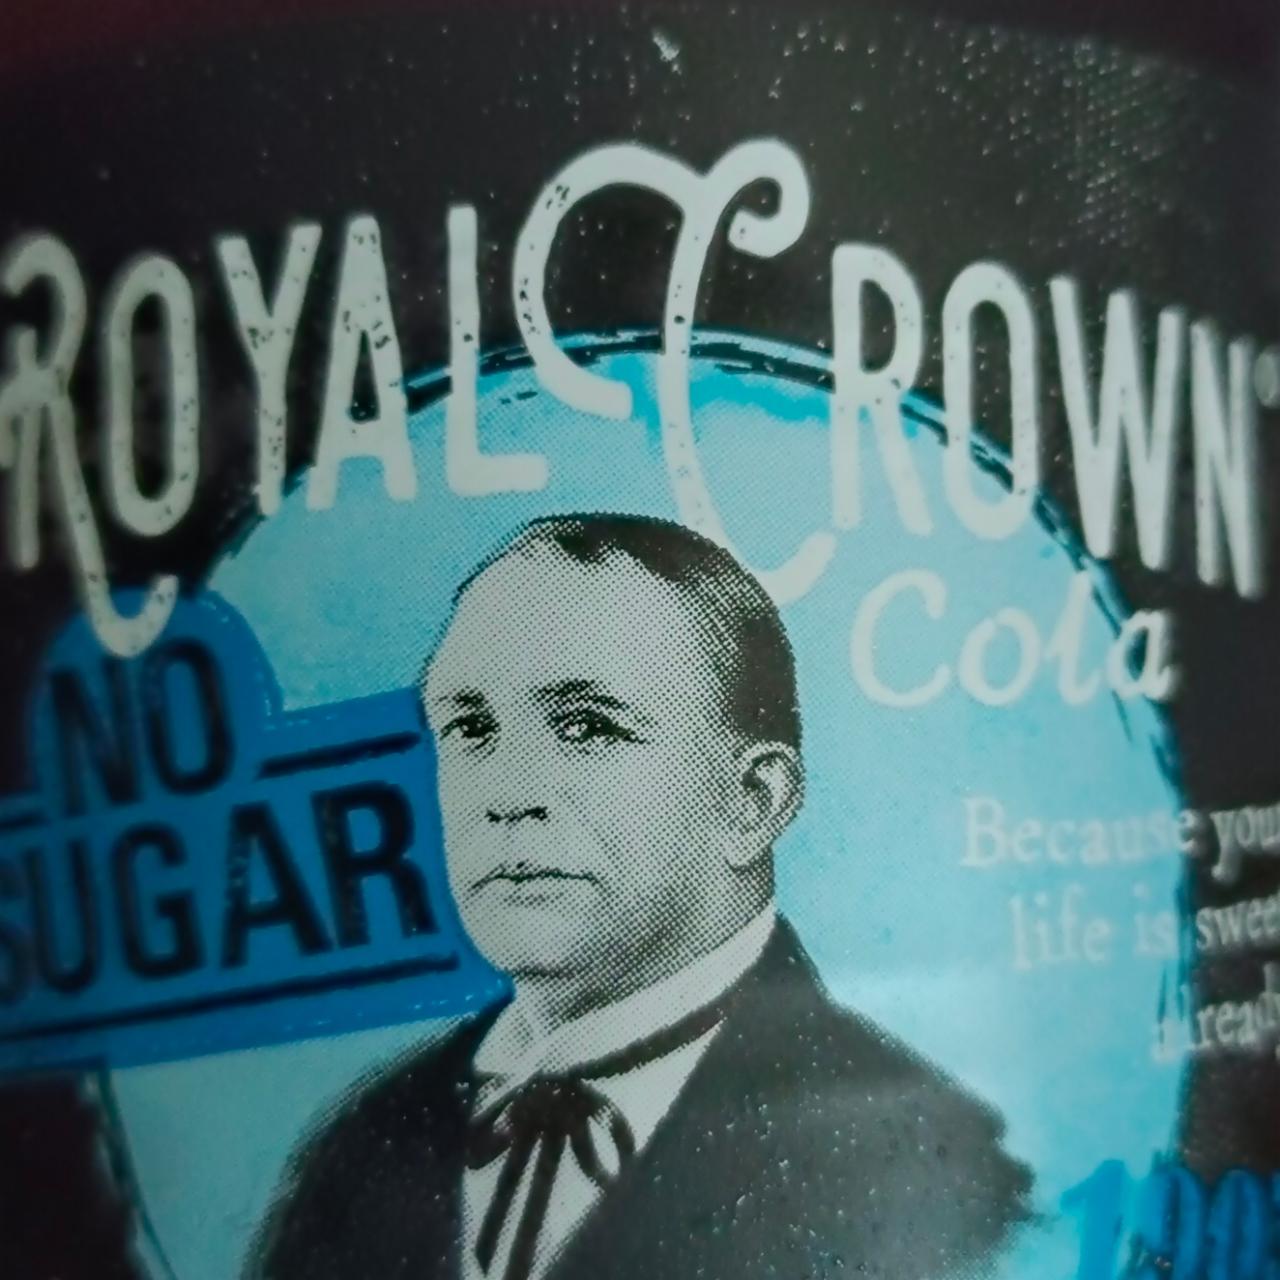 Fotografie - Royal Crown Cola no sugar Kofola